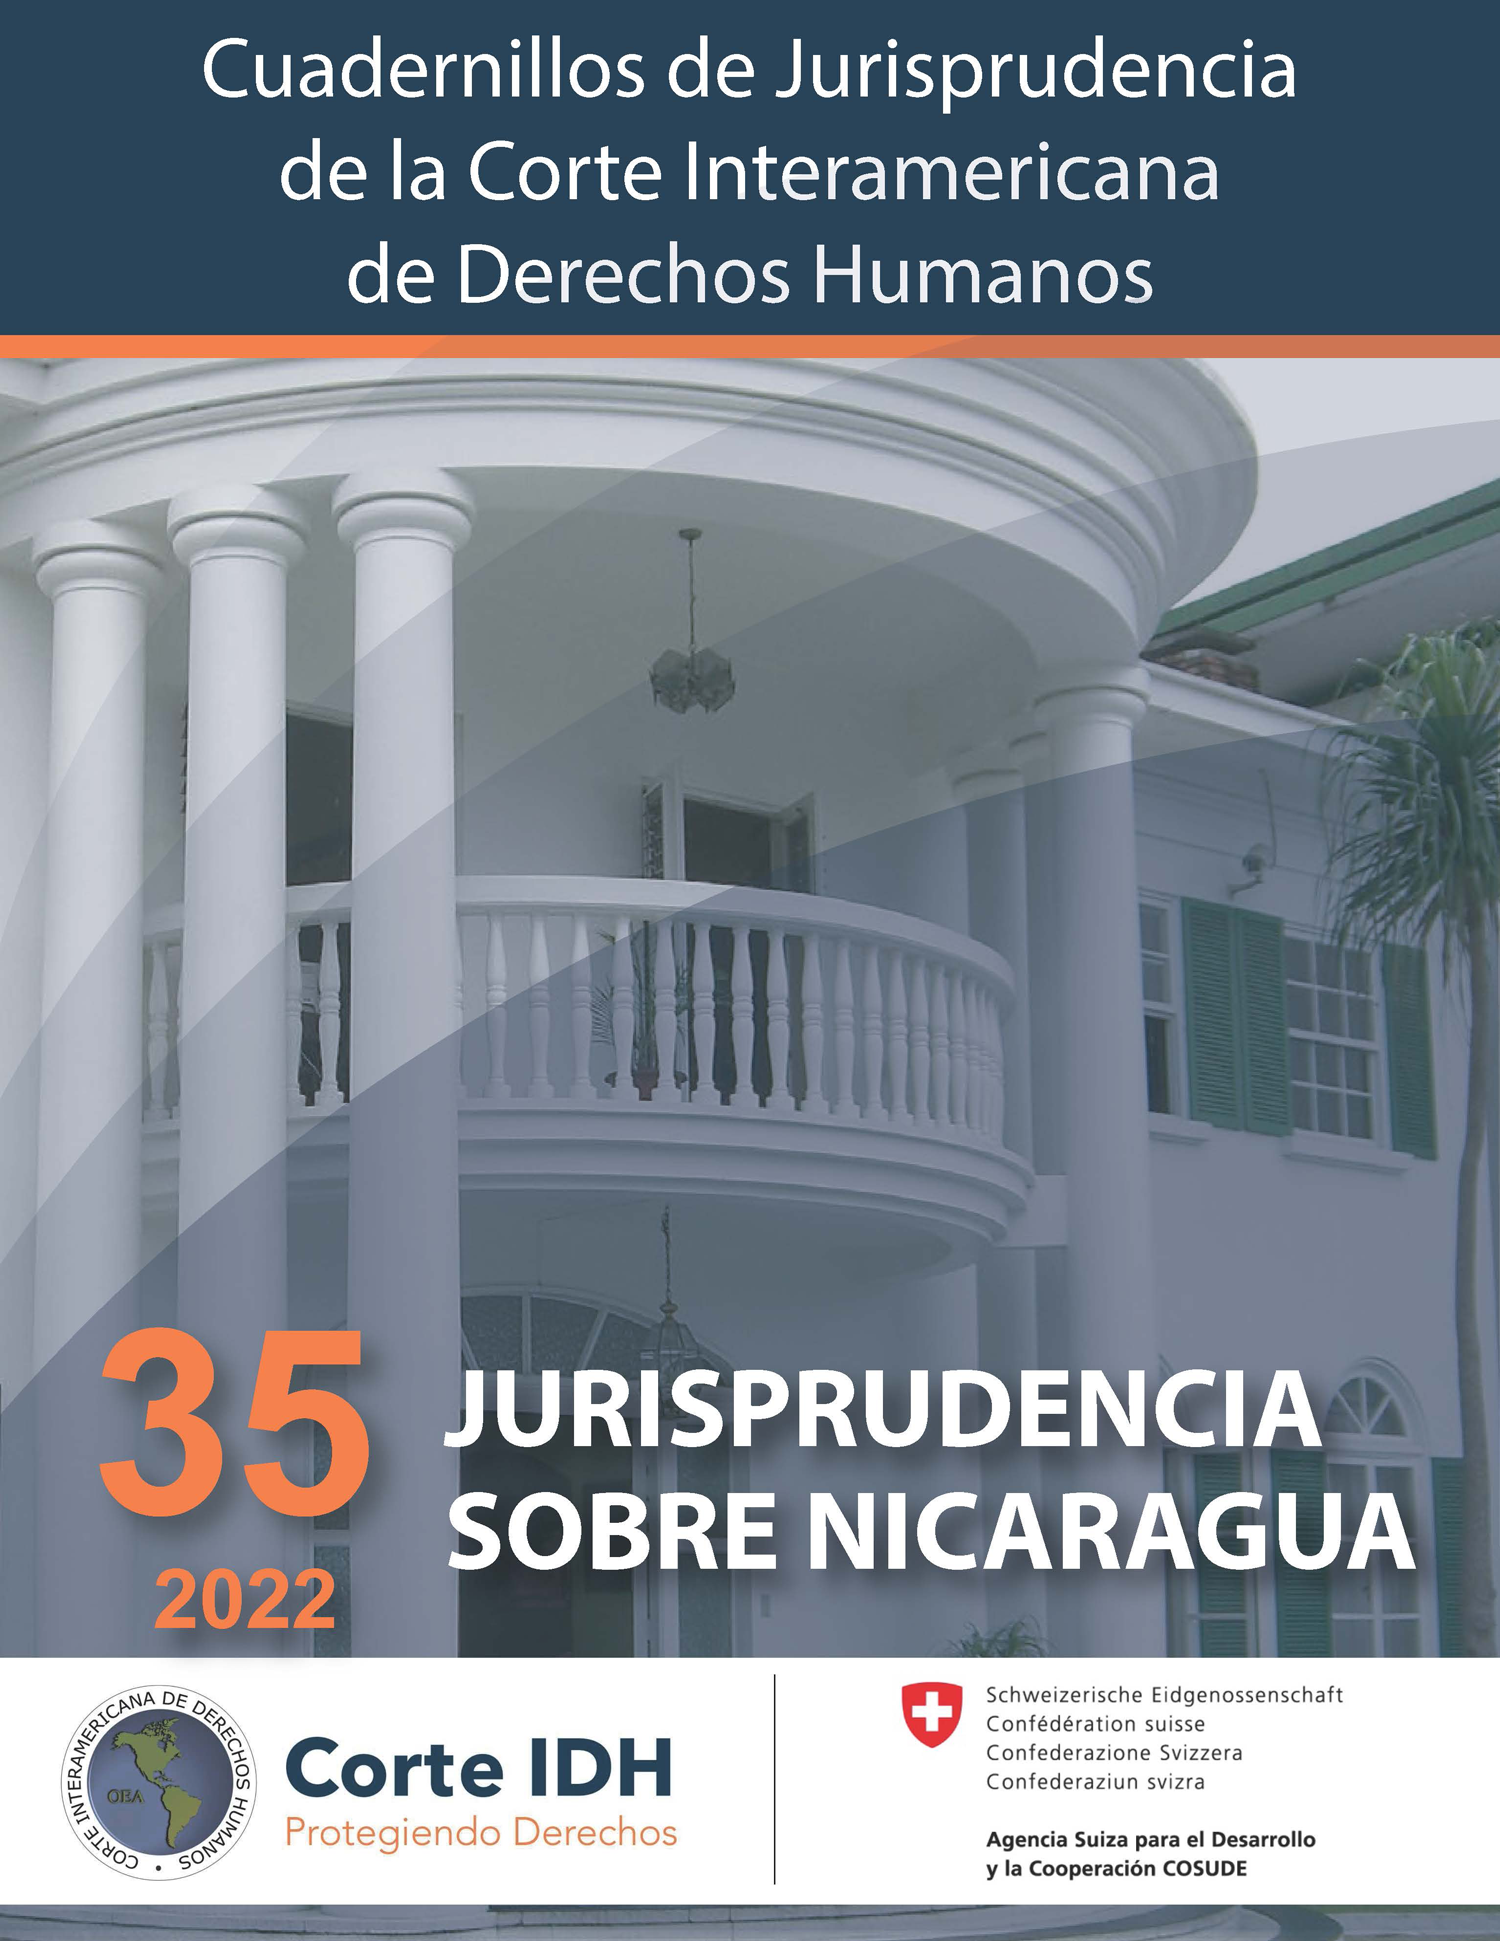 Cuadernillo de Jurisprudencia N° 35: Jurisprudencia sobre Nicaragua